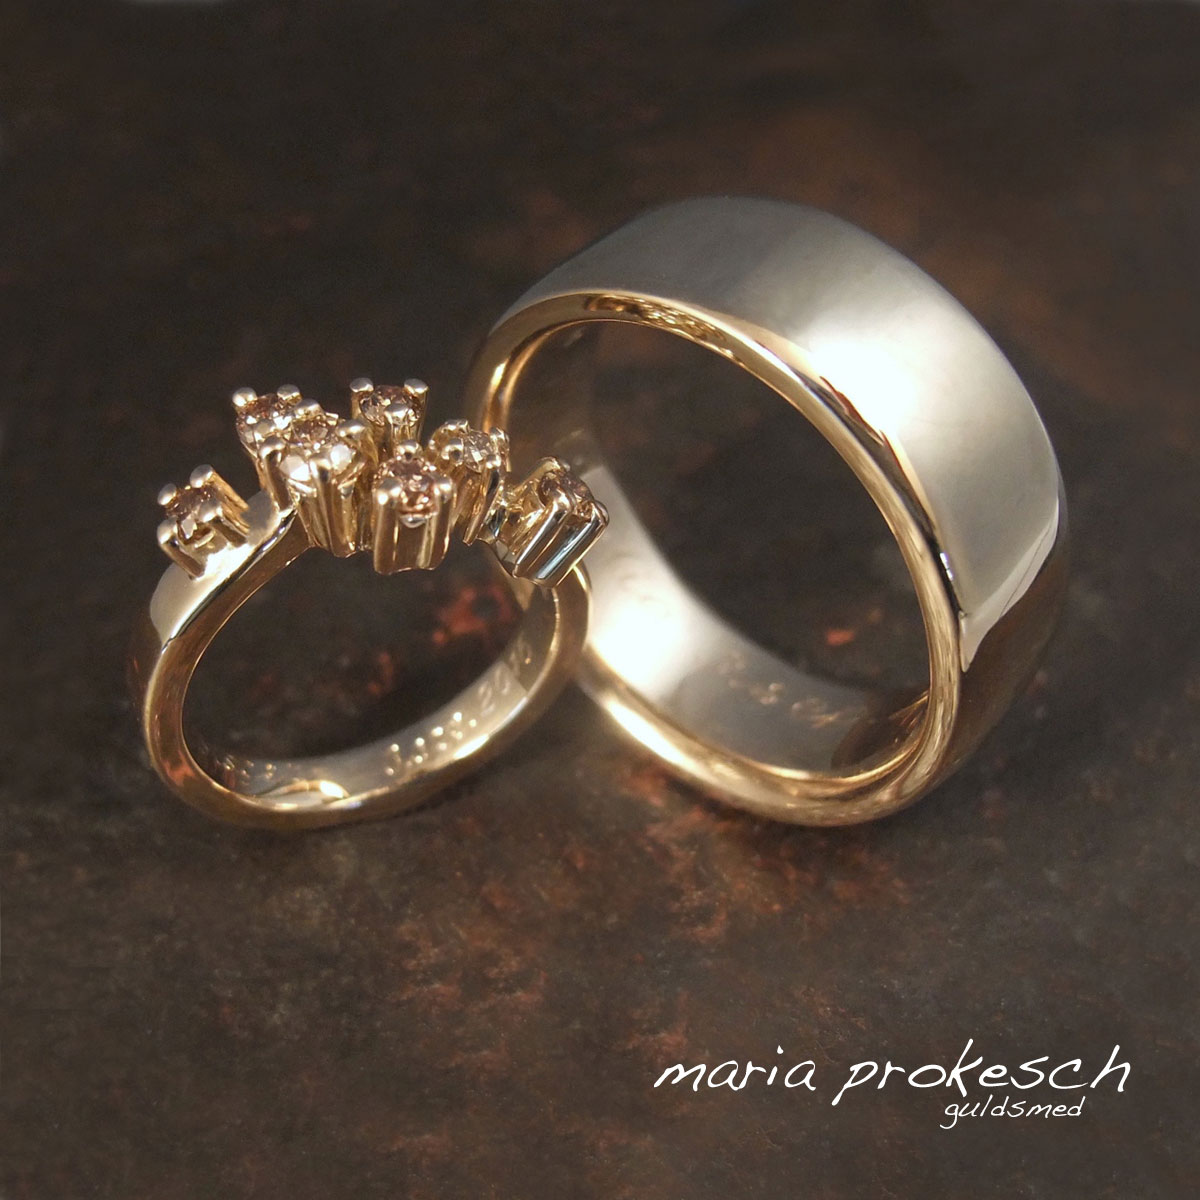 Et par eksklusive og elegante vielsesringe i 14 karat guld. Dame ring med naturbrune diamanter i små fatninger. Mandering er en blank, bred herrering.